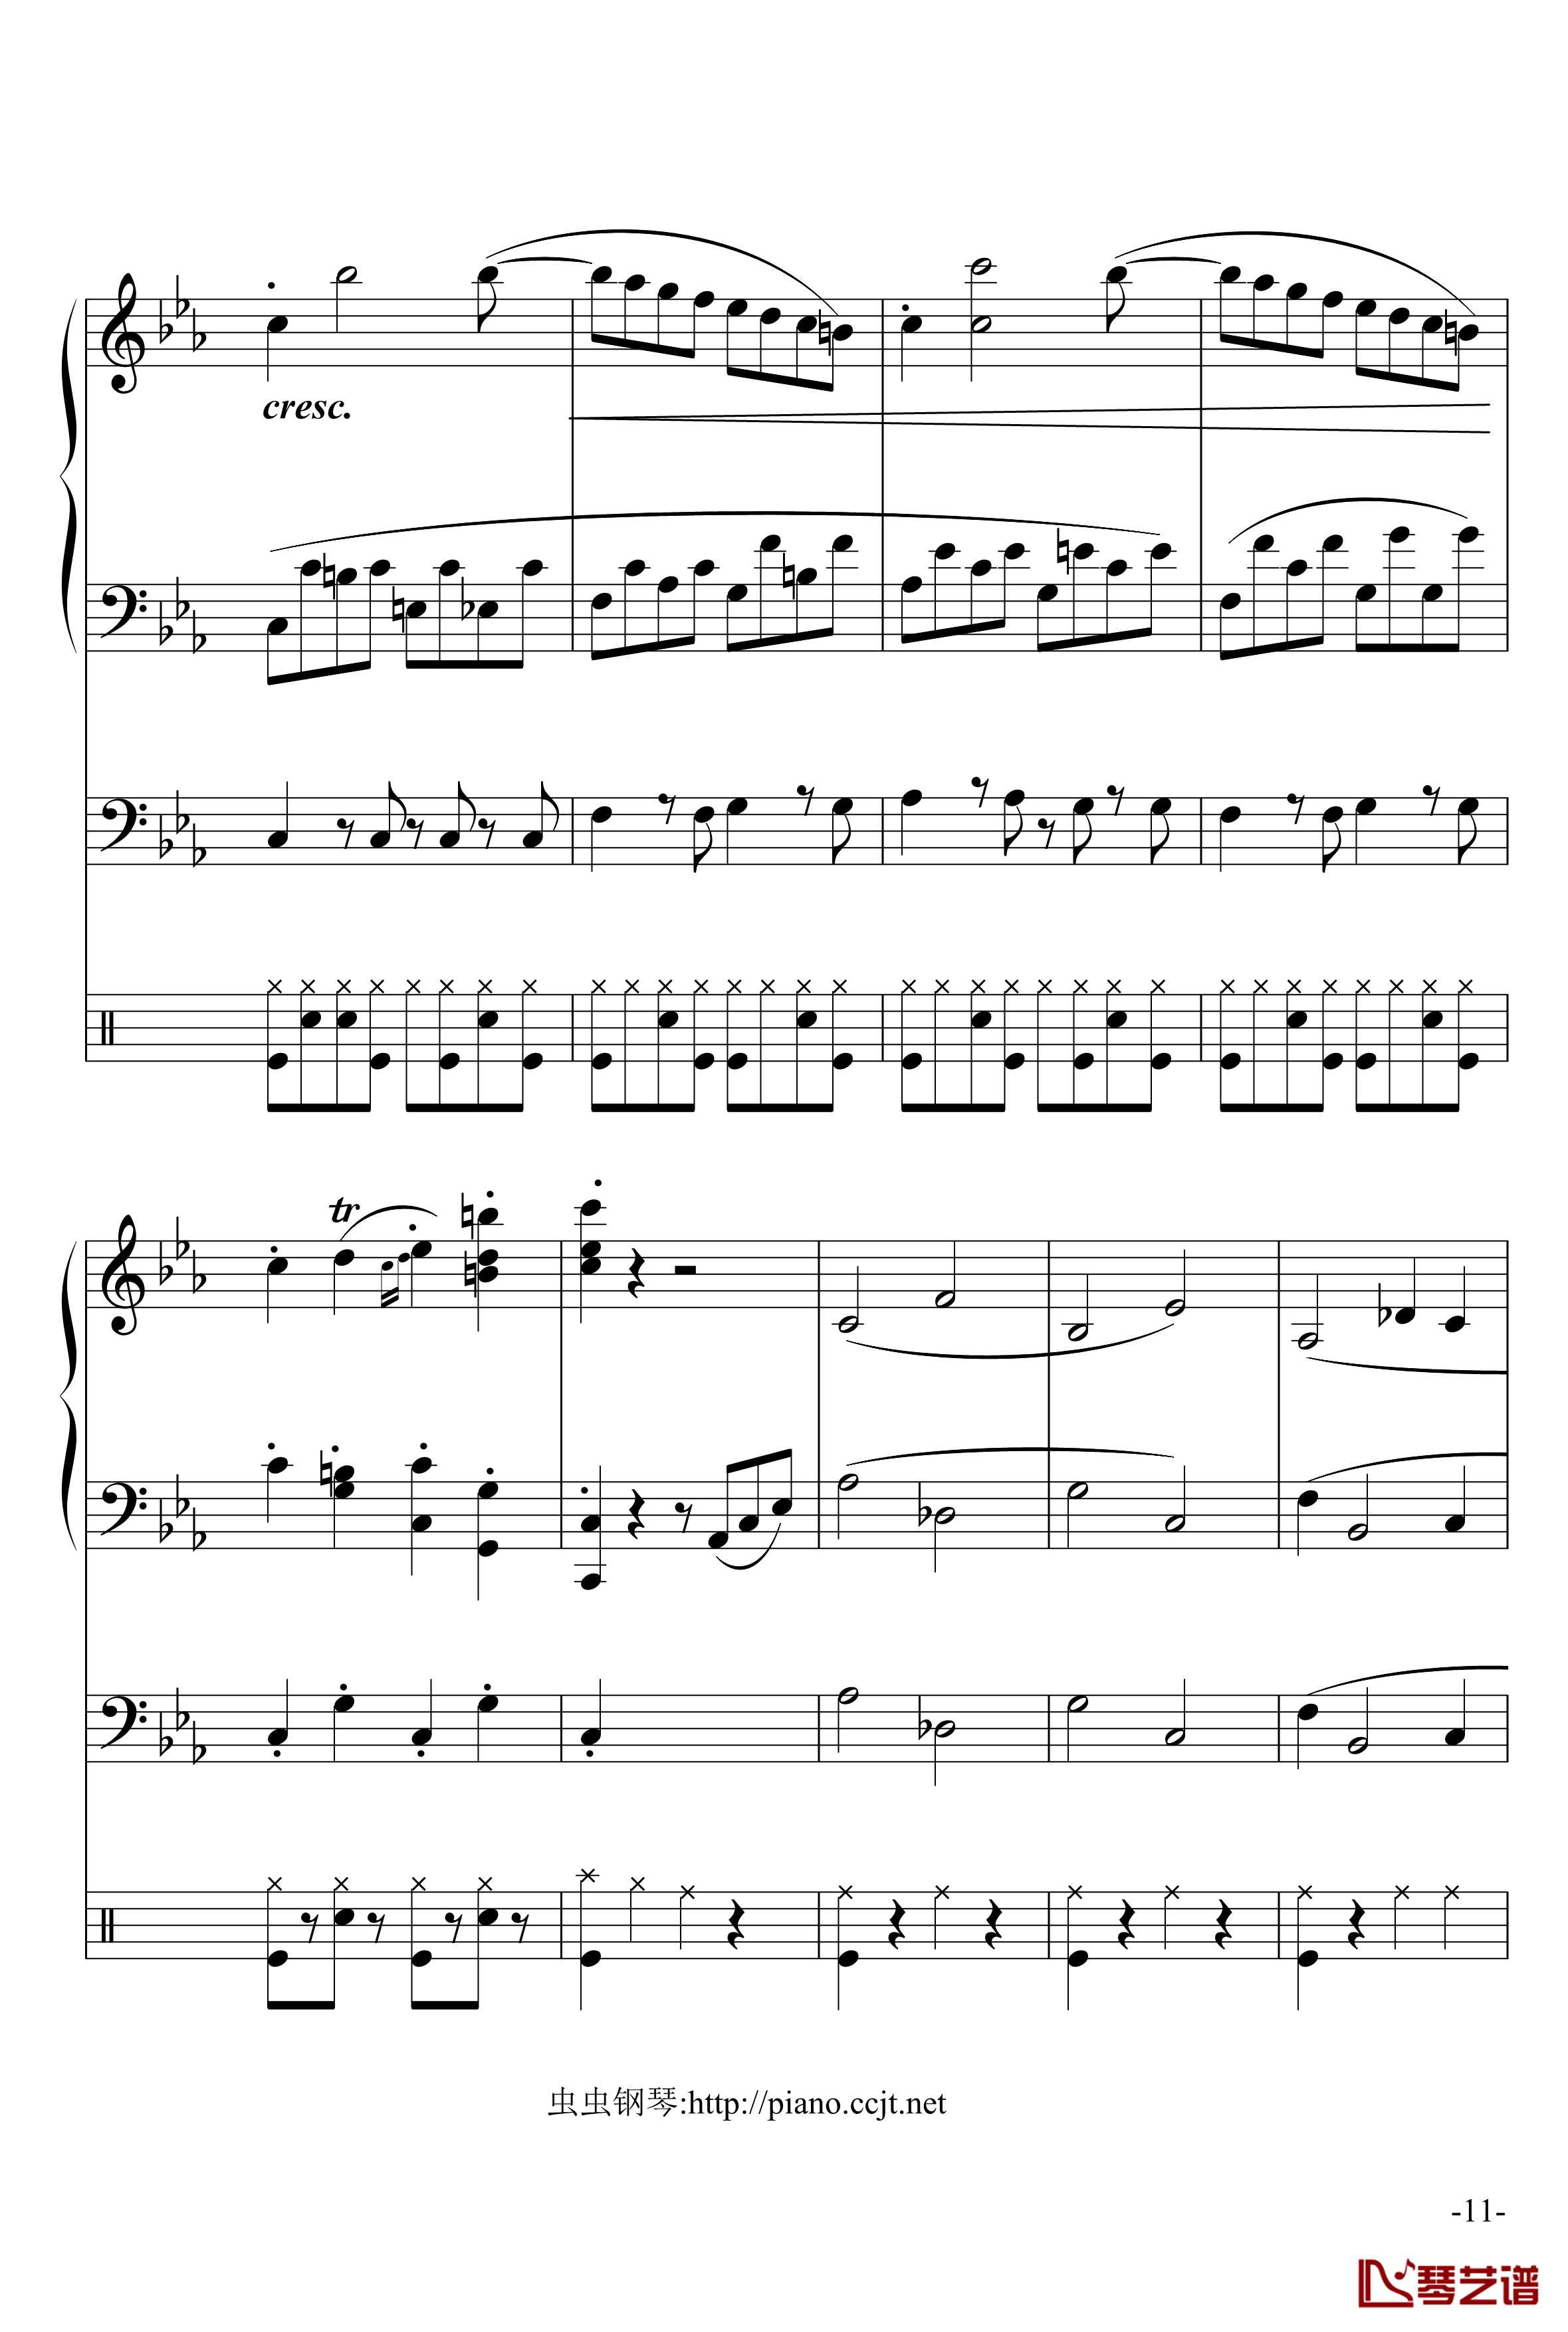 悲怆奏鸣曲钢琴谱-加小乐队-贝多芬-beethoven11